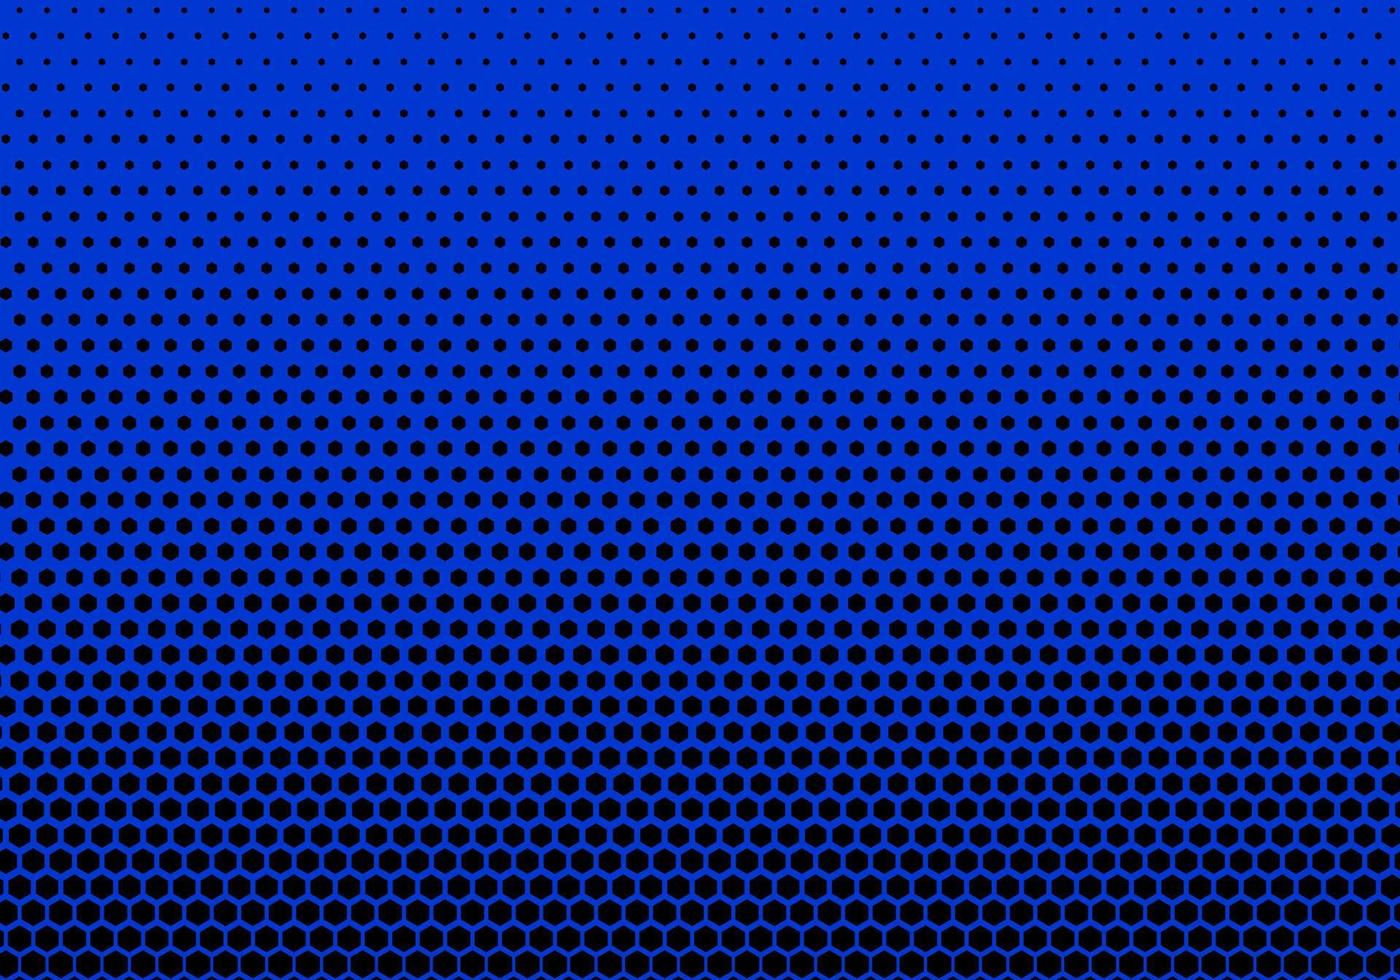 el fondo geométrico usa formas hexagonales para formar un patrón de grande a pequeño. fondo azul utilícelo como fondo de pantalla o ilustración. vector